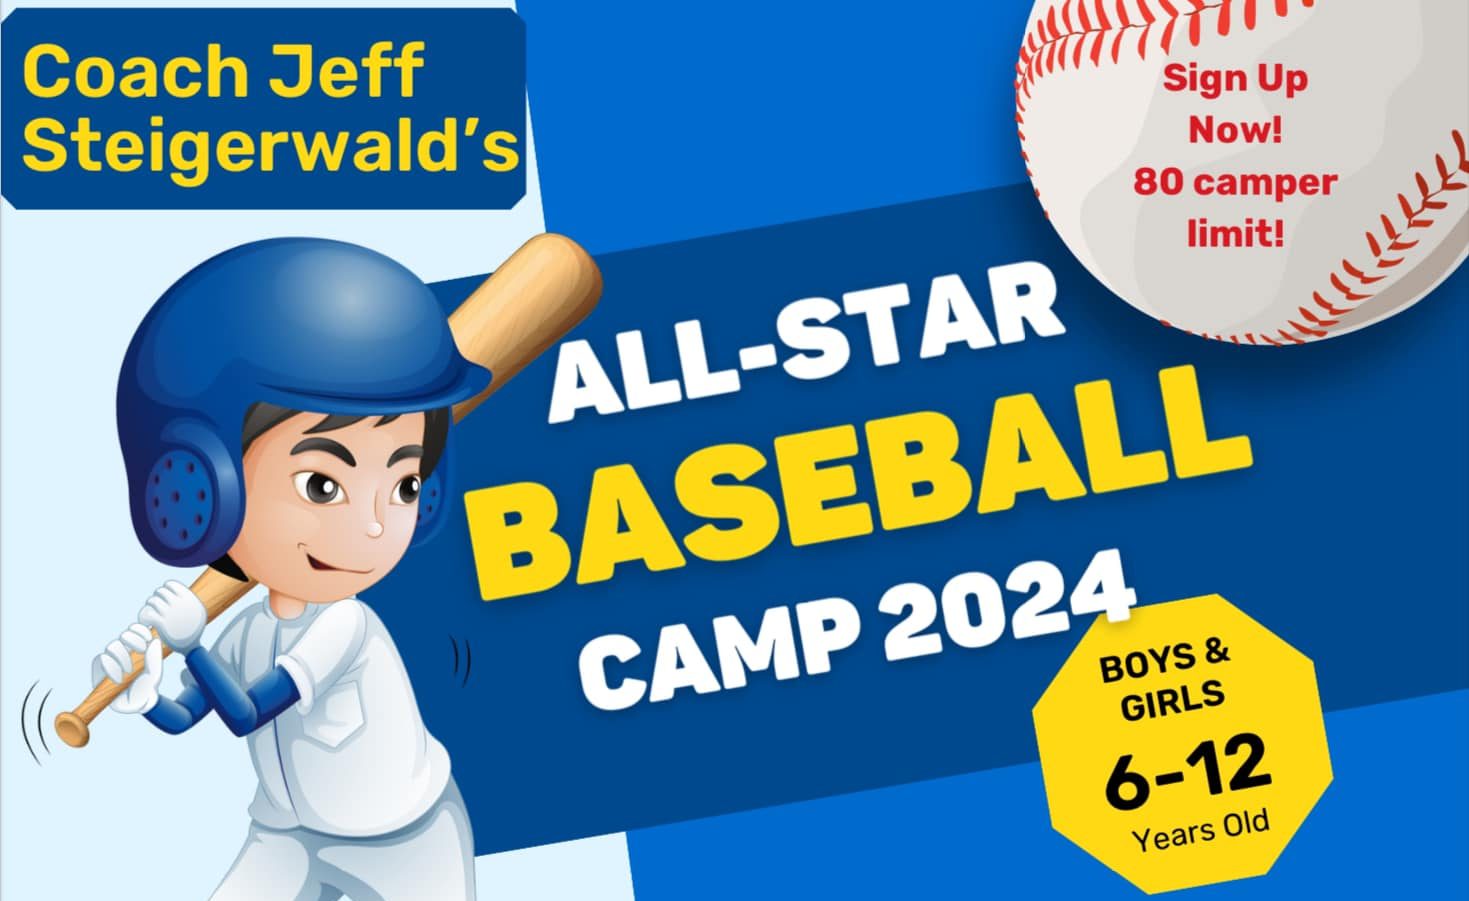 Coach Jeff Steigerwald’s All-Star Baseball Camp